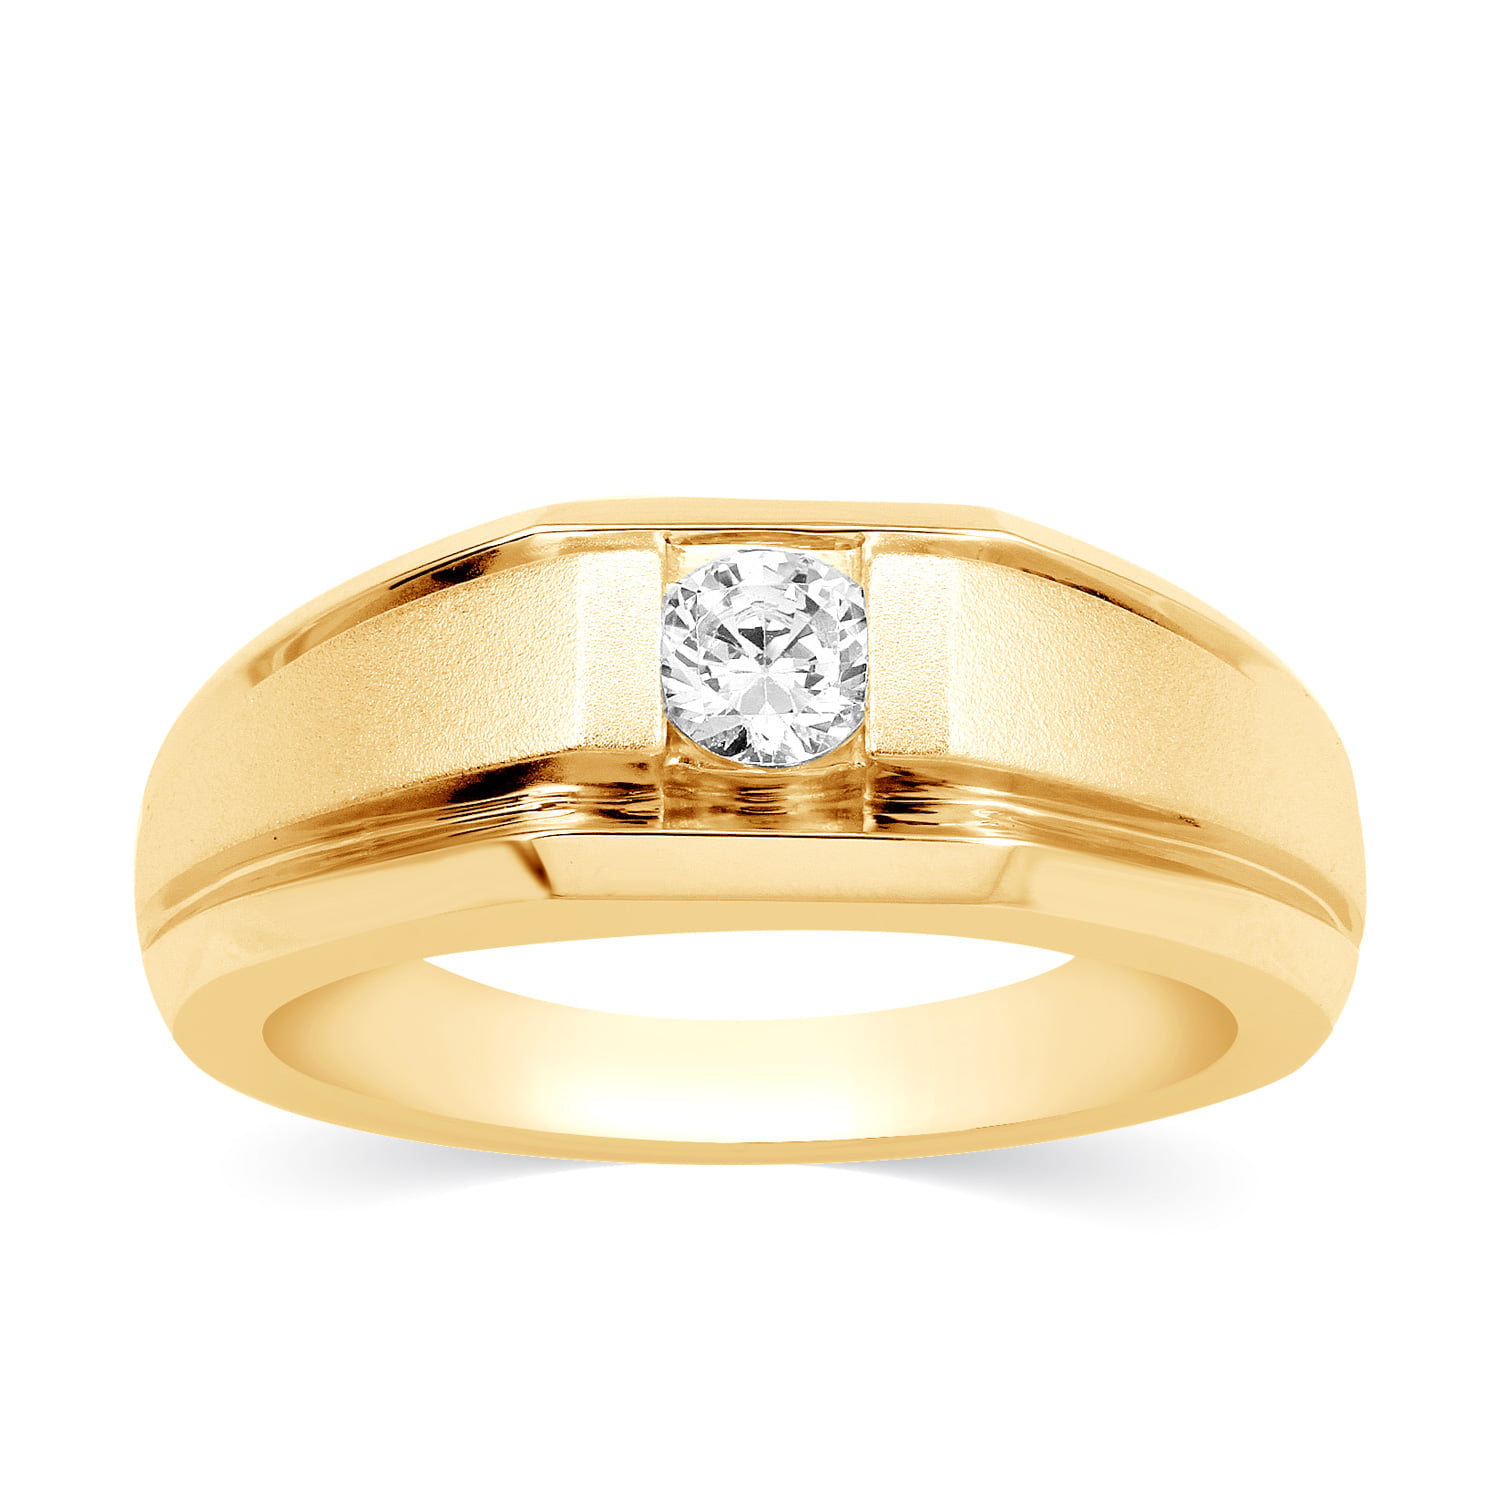 Expertise Of Rose Gold Diamond Ladies Ring